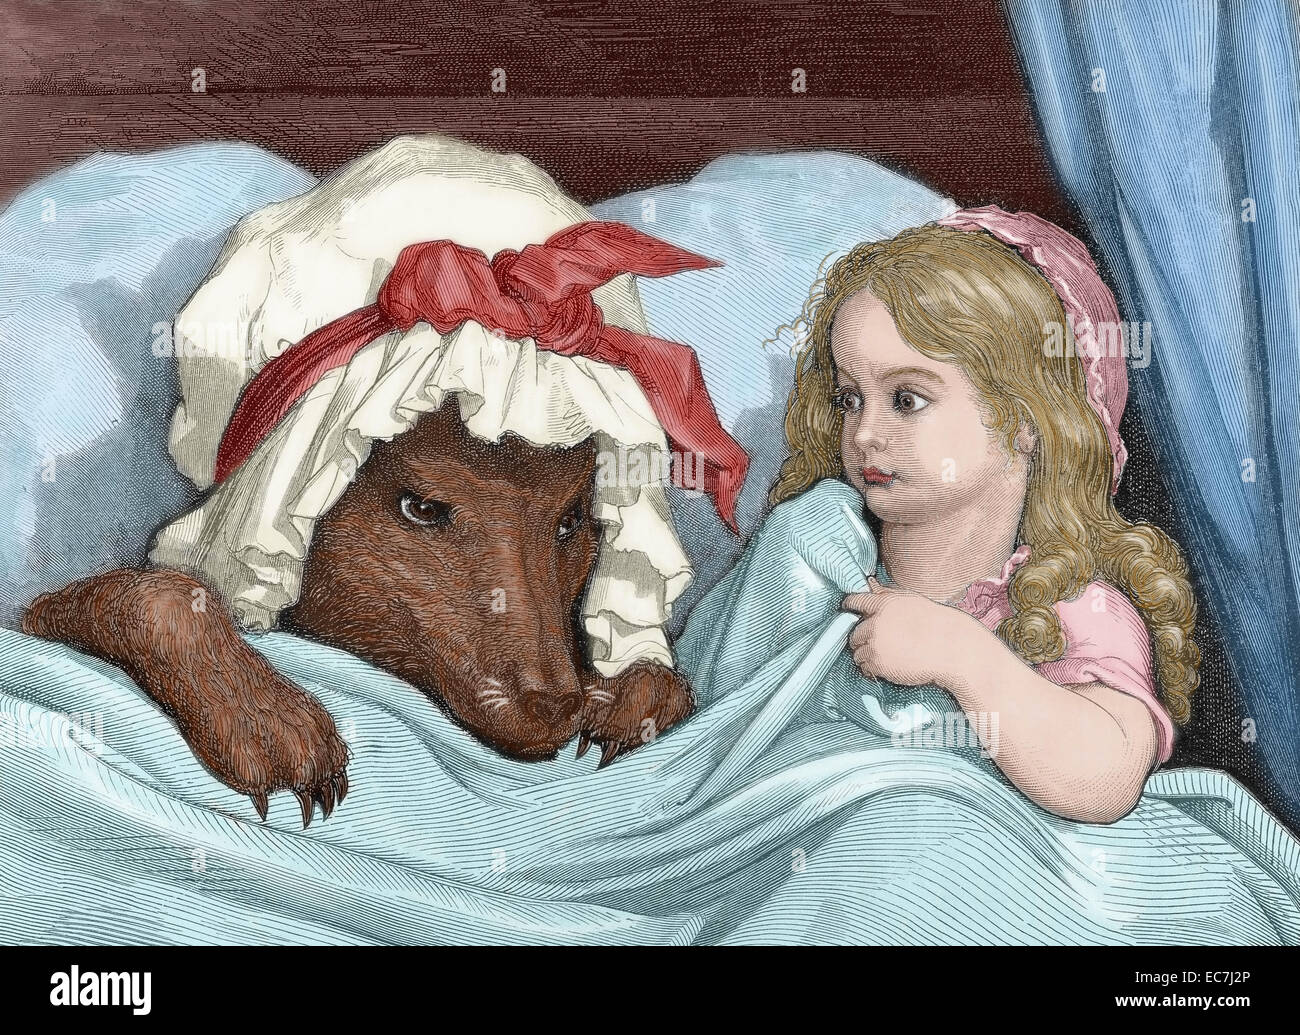 Charles Perrault (1628-1703). Französischer Schriftsteller. Little Red Riding Hood erstaunt um zu sehen, wie ihre Großmutter aussieht. Stich von Gustave Dore (1832-1883). Farbige. Stockfoto